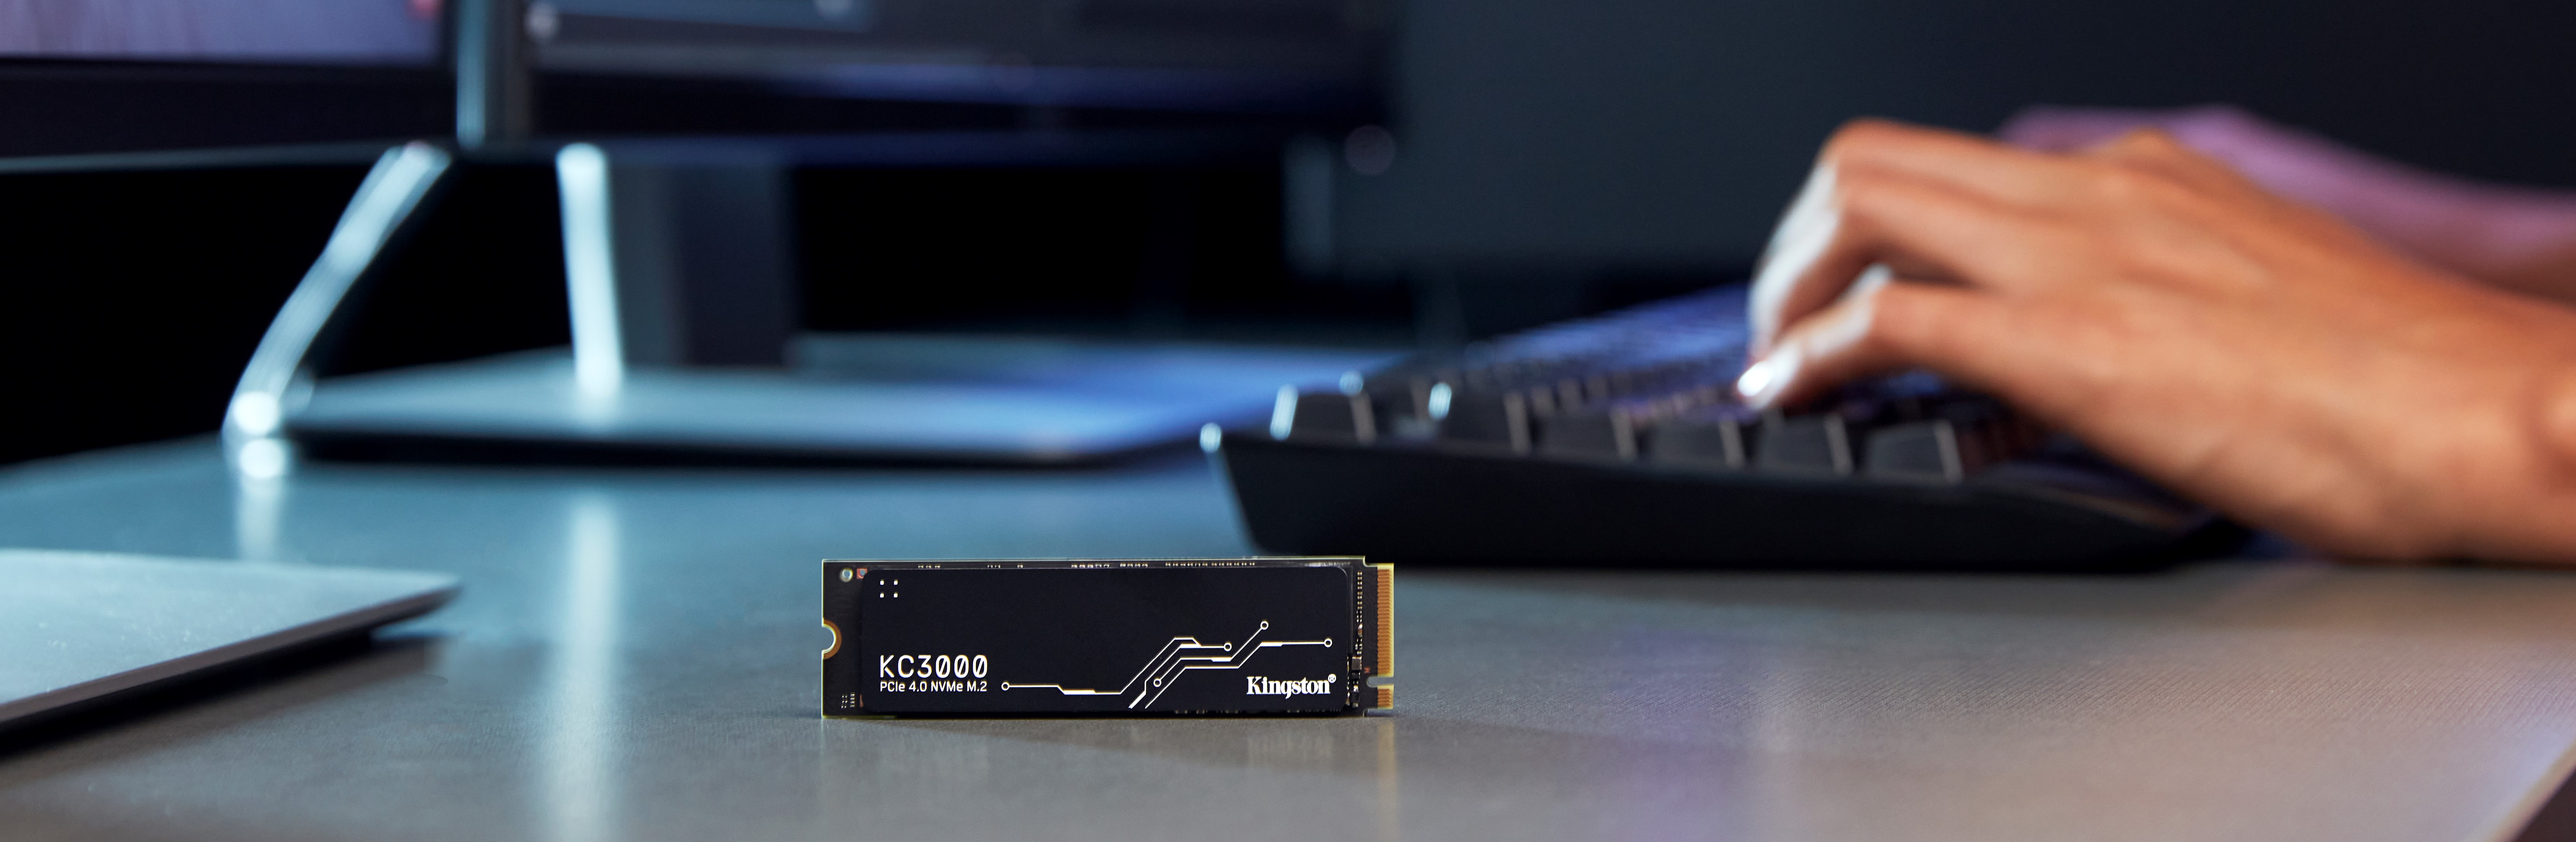  Rendimiento Superior con el nuevo SSD KC3000 NVMe PCIe 4.0 de nueva generación